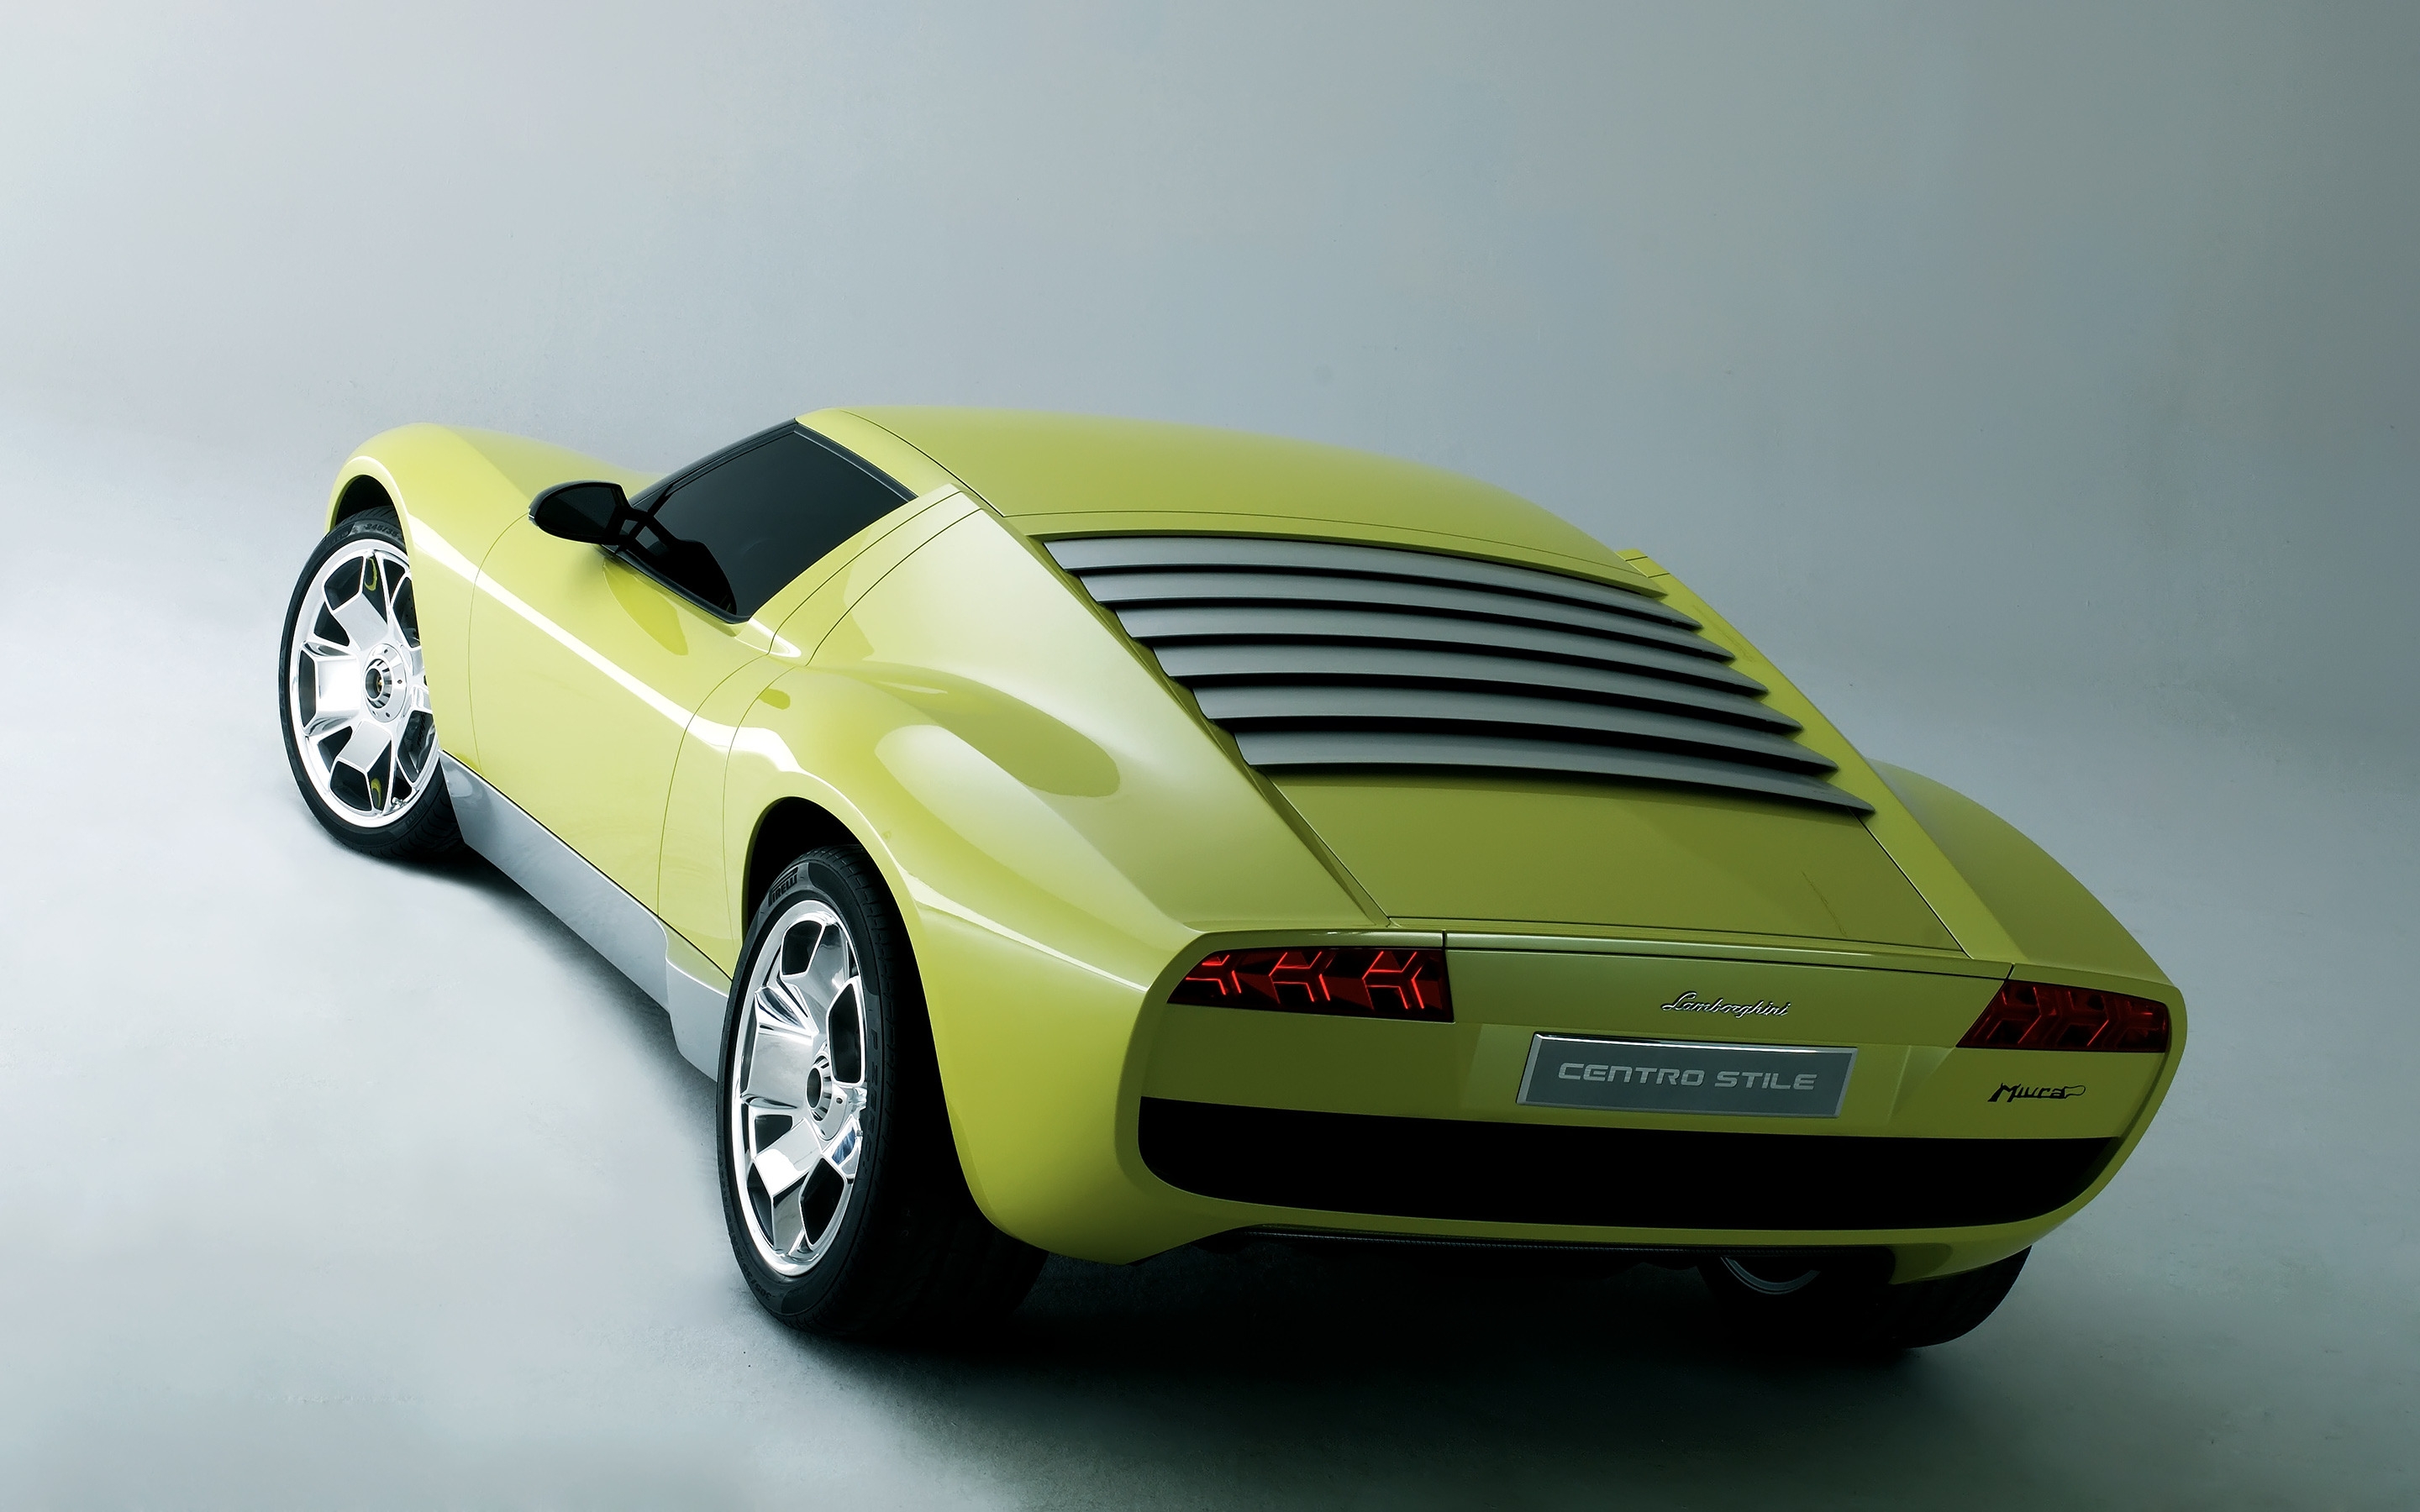 Lamborghini Miura Concept Rear for 2880 x 1800 Retina Display resolution